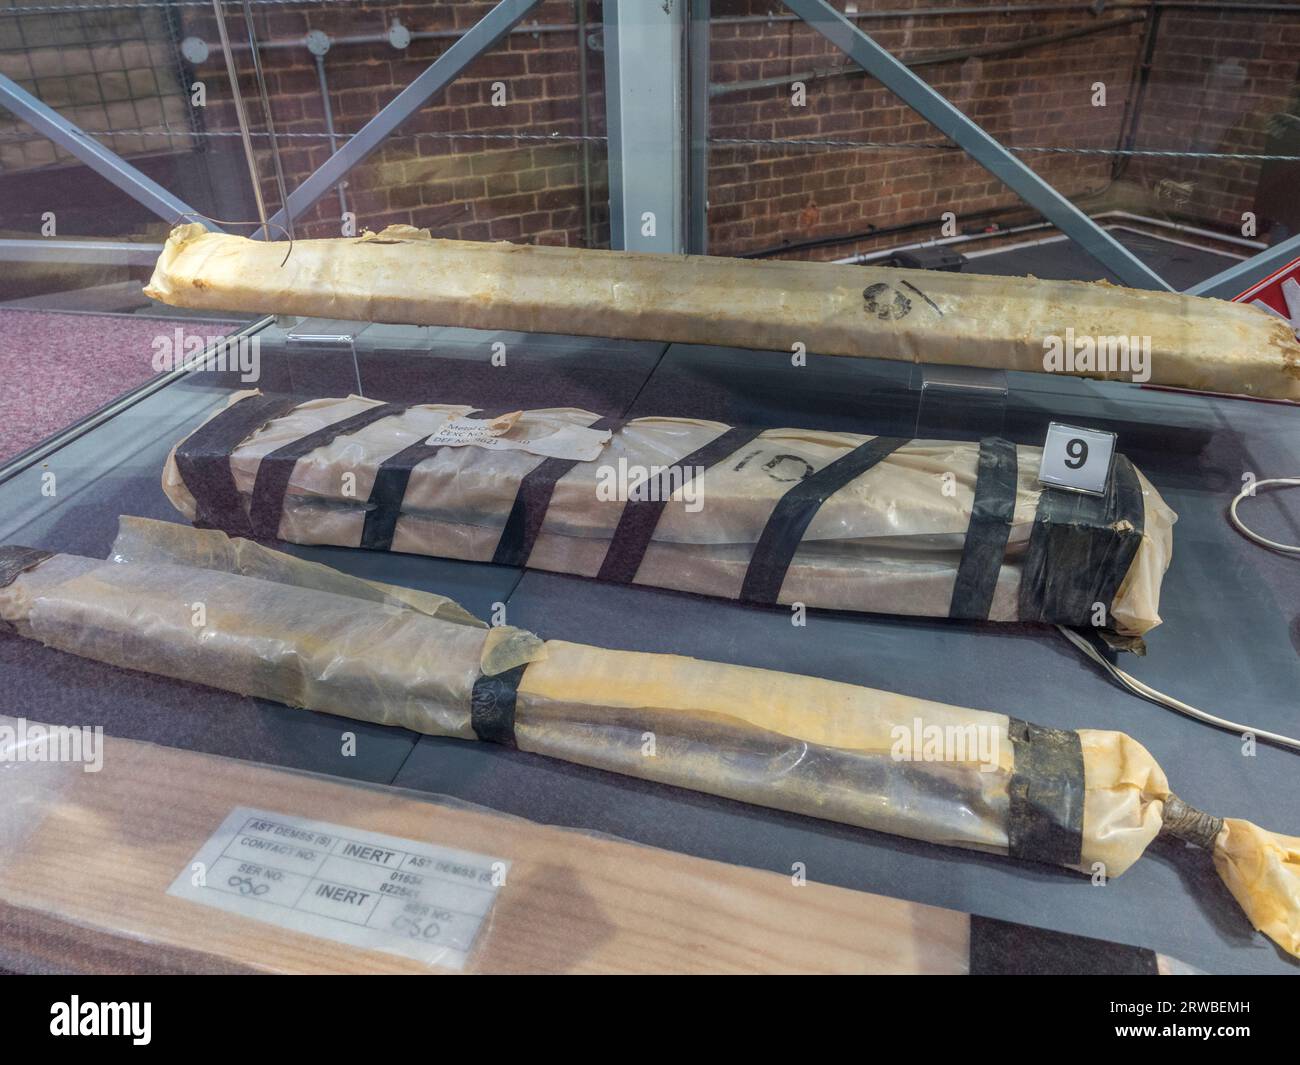 Exposition d'engins explosifs improvisés inertes (EEI) exposés au Royal Engineers Museum à Gillingham, Kent, Royaume-Uni. Banque D'Images